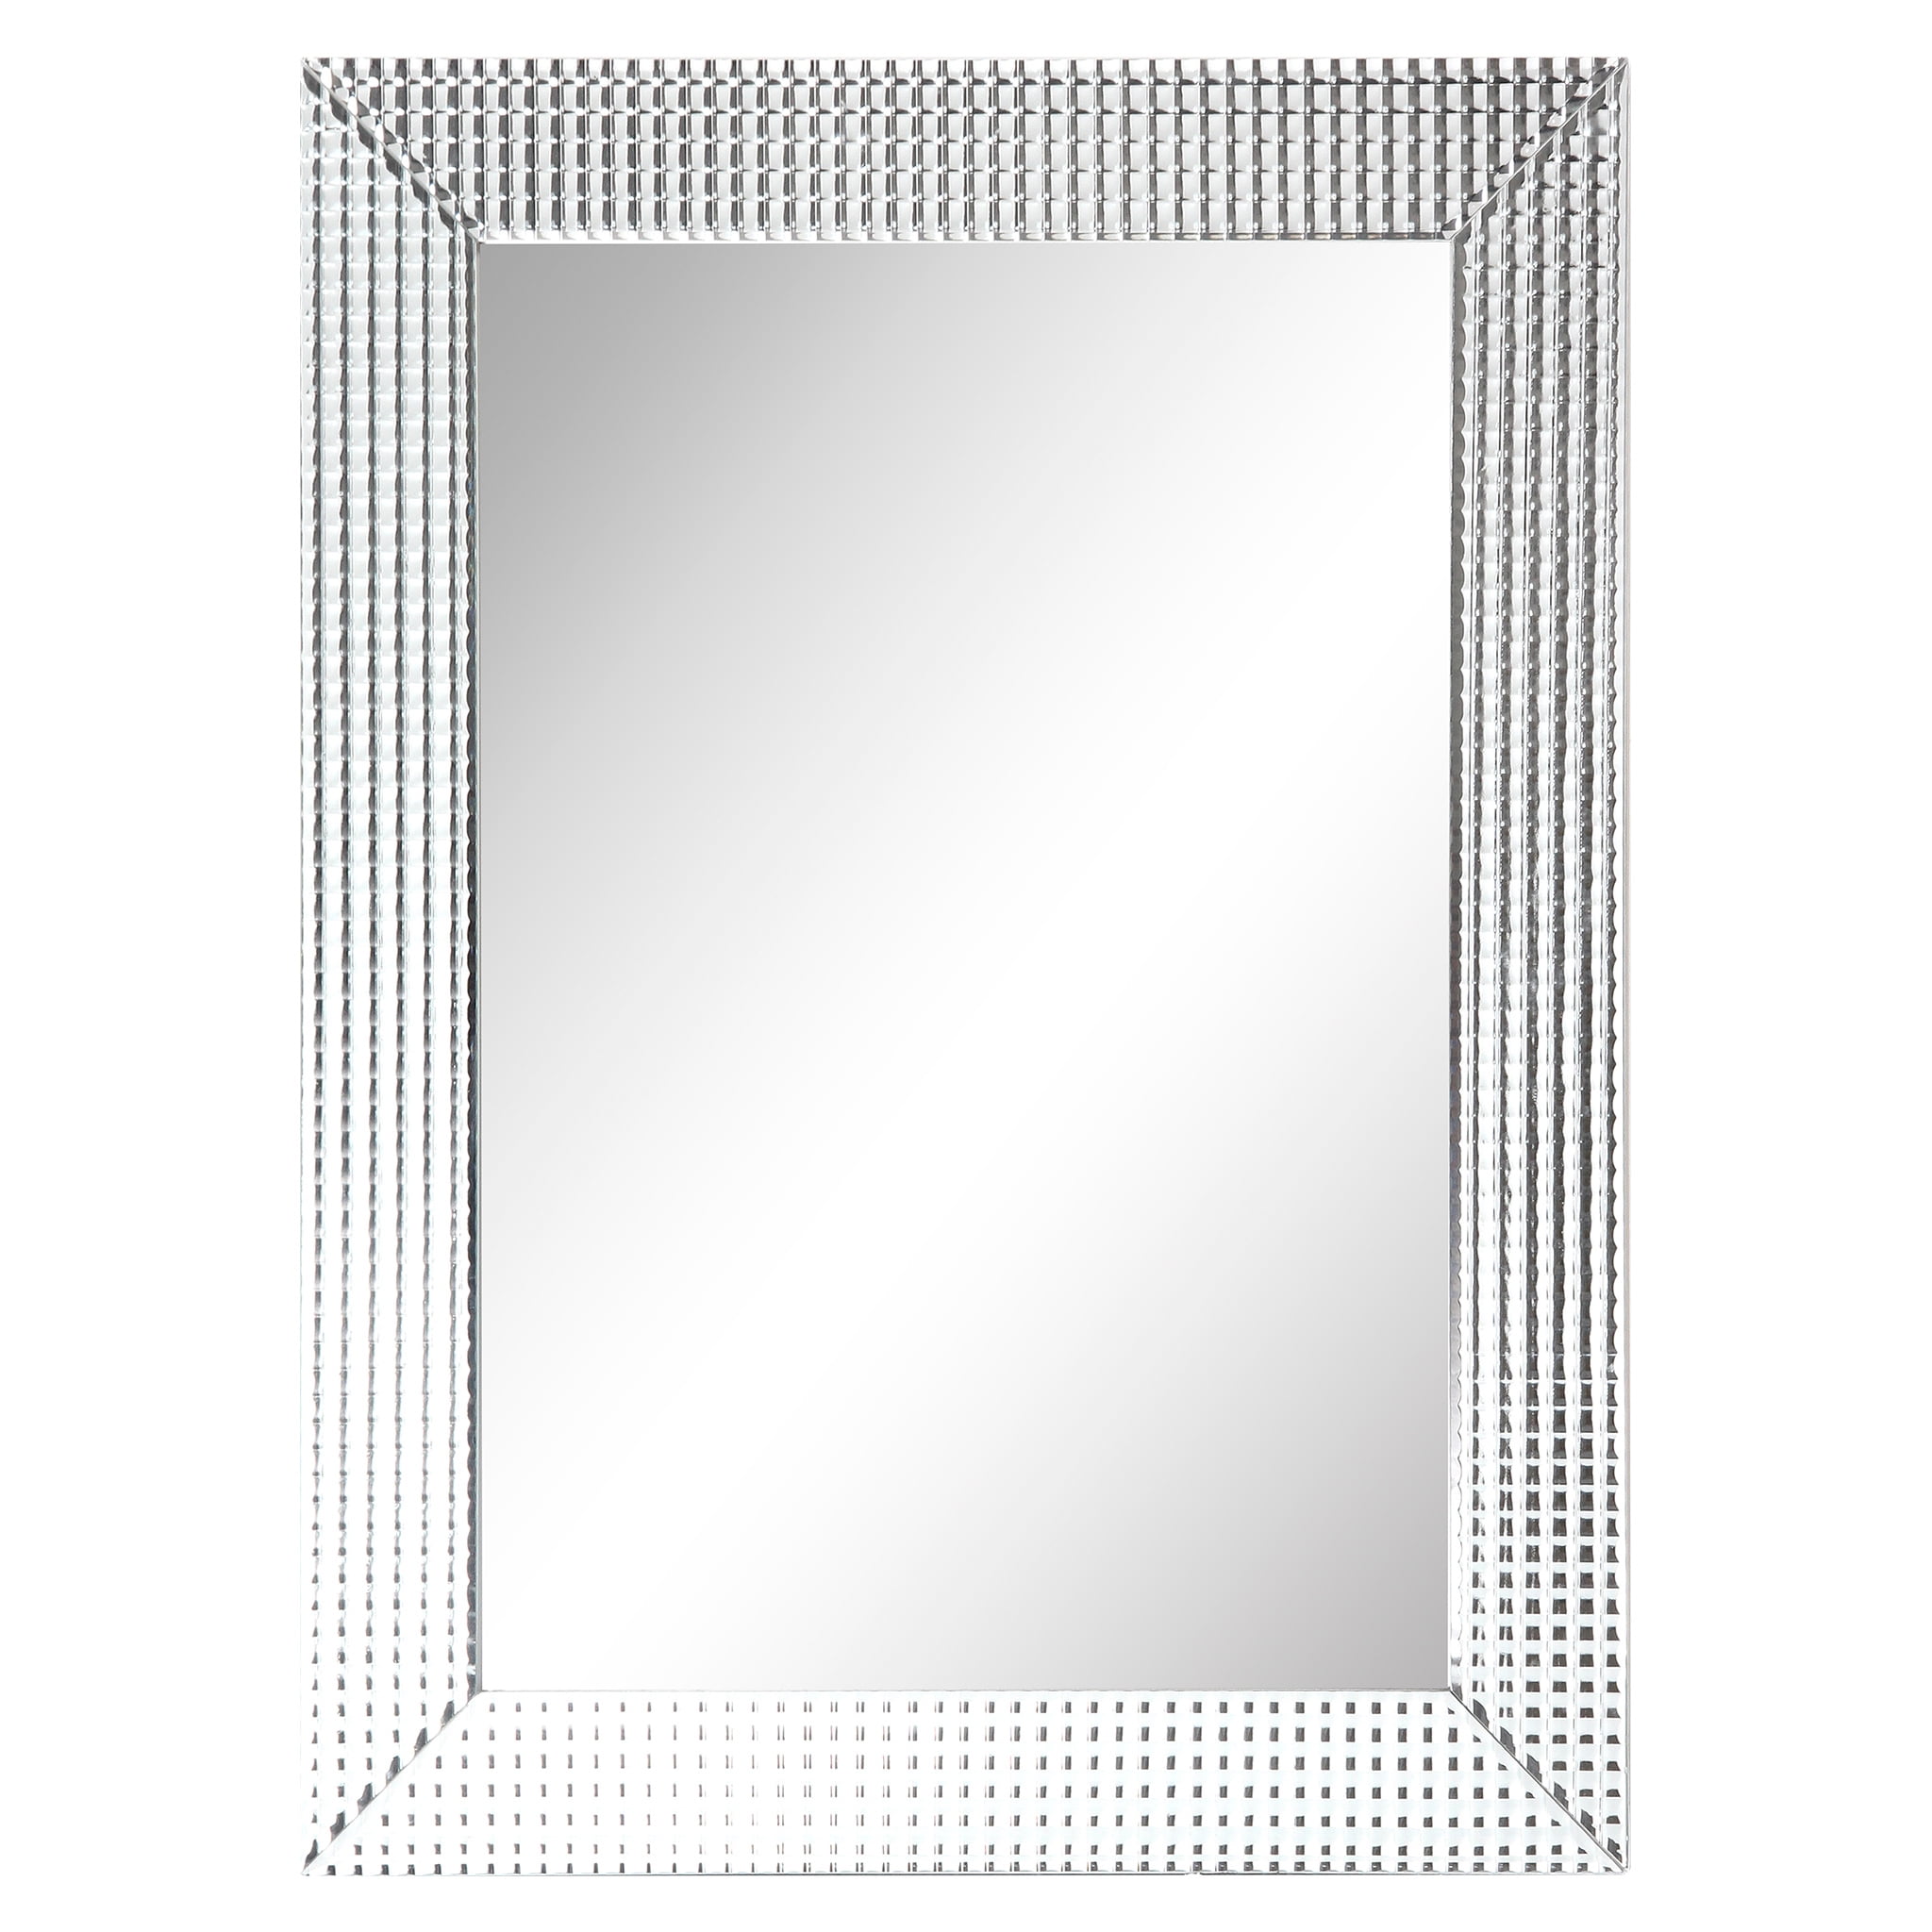 Empire Art Direct Bling Beveled Glass Rectangular Wall Mirror